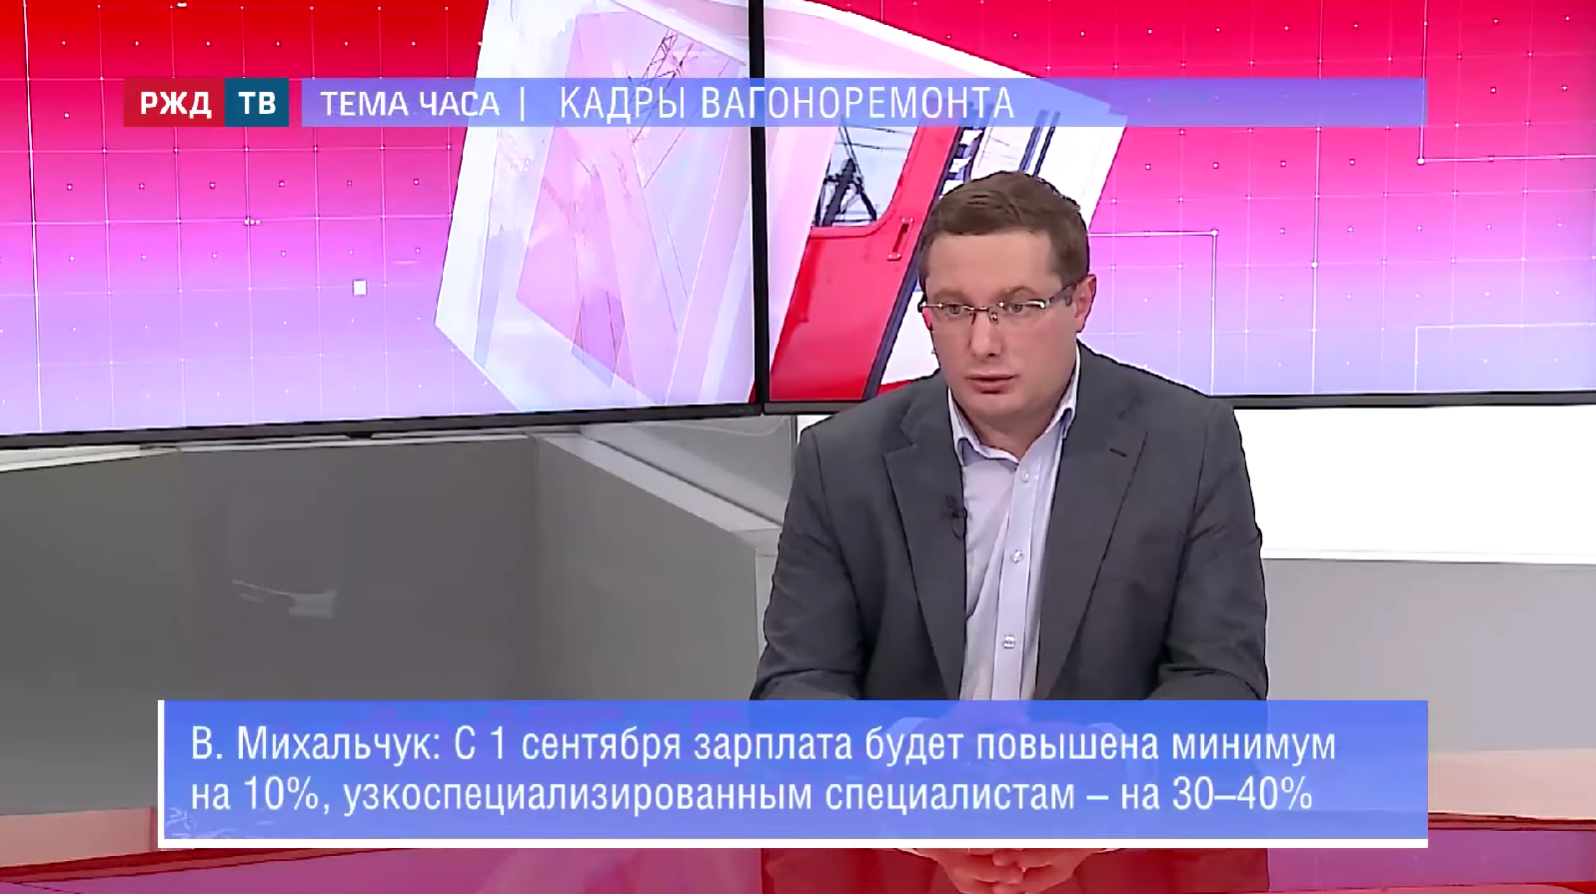 Вопросы кадровой политики Группы НВРК и отрасли обсудили в эфире РЖД ТВ